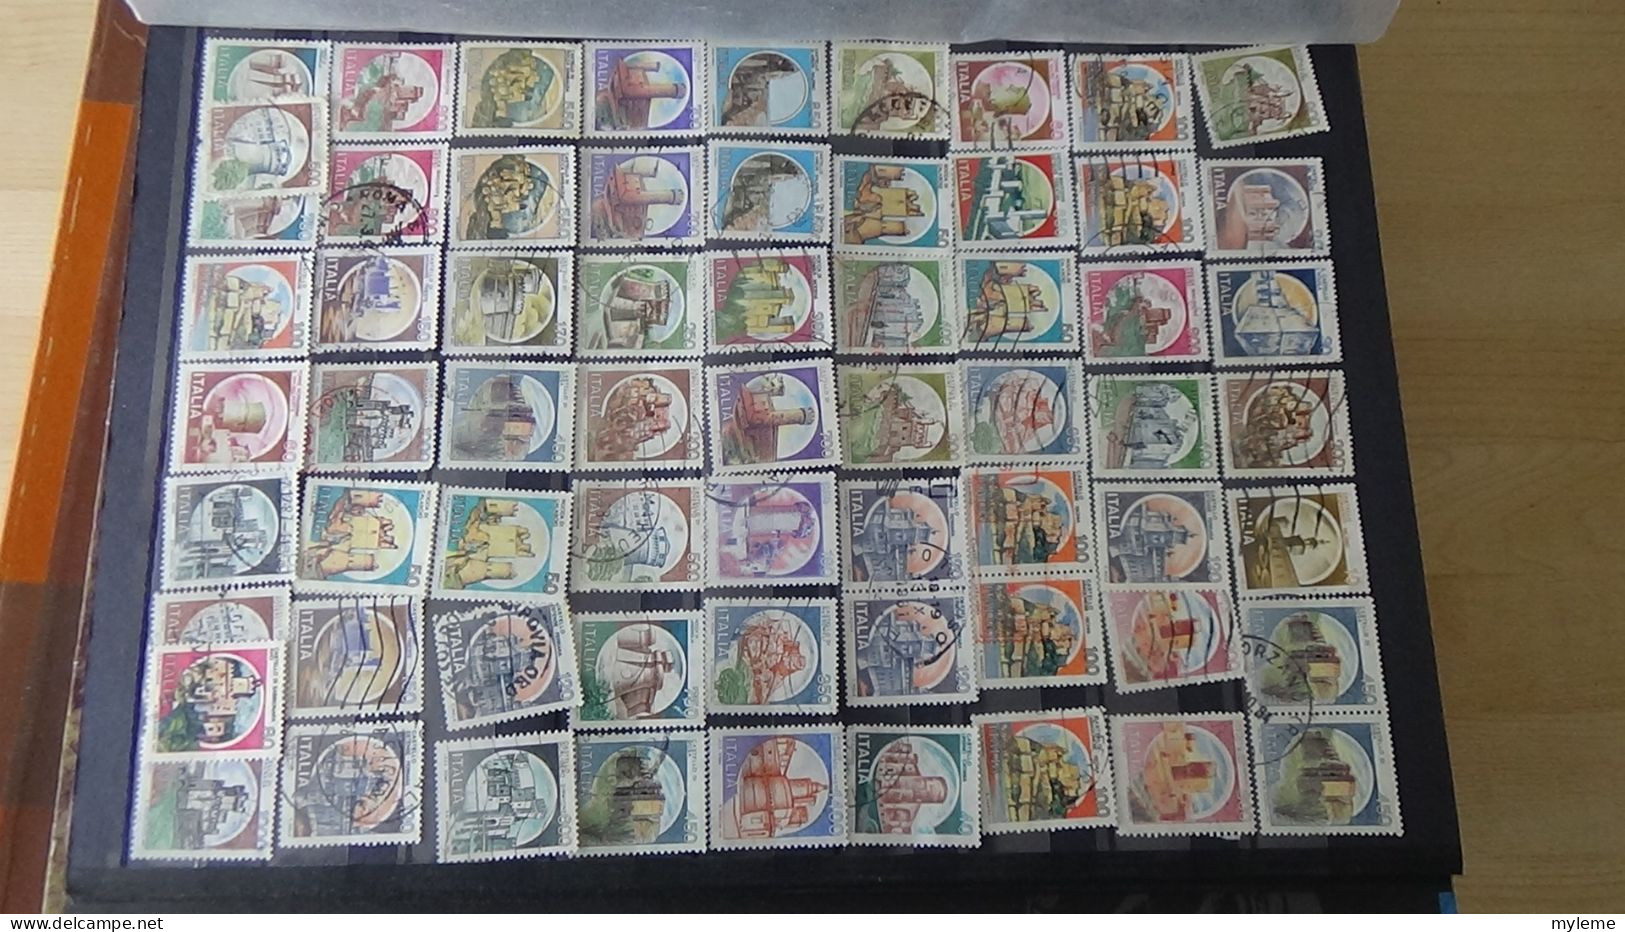 BF47 Bel ensemble de timbres de divers pays dont Italie N° 2370Aa **. Cote 1500 euros